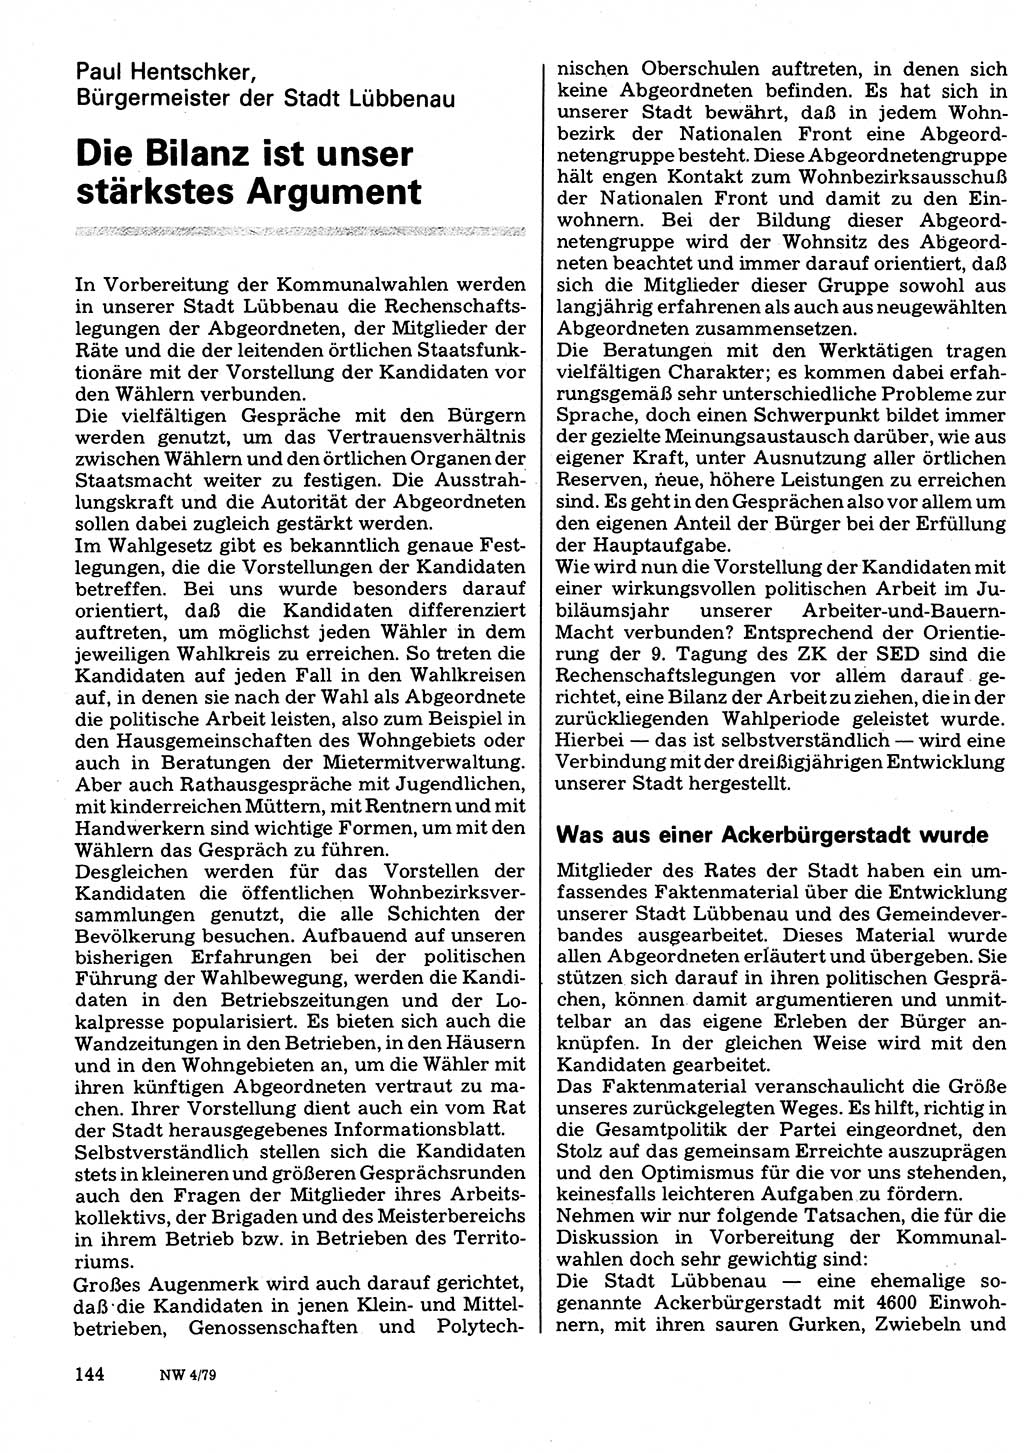 Neuer Weg (NW), Organ des Zentralkomitees (ZK) der SED (Sozialistische Einheitspartei Deutschlands) für Fragen des Parteilebens, 34. Jahrgang [Deutsche Demokratische Republik (DDR)] 1979, Seite 144 (NW ZK SED DDR 1979, S. 144)